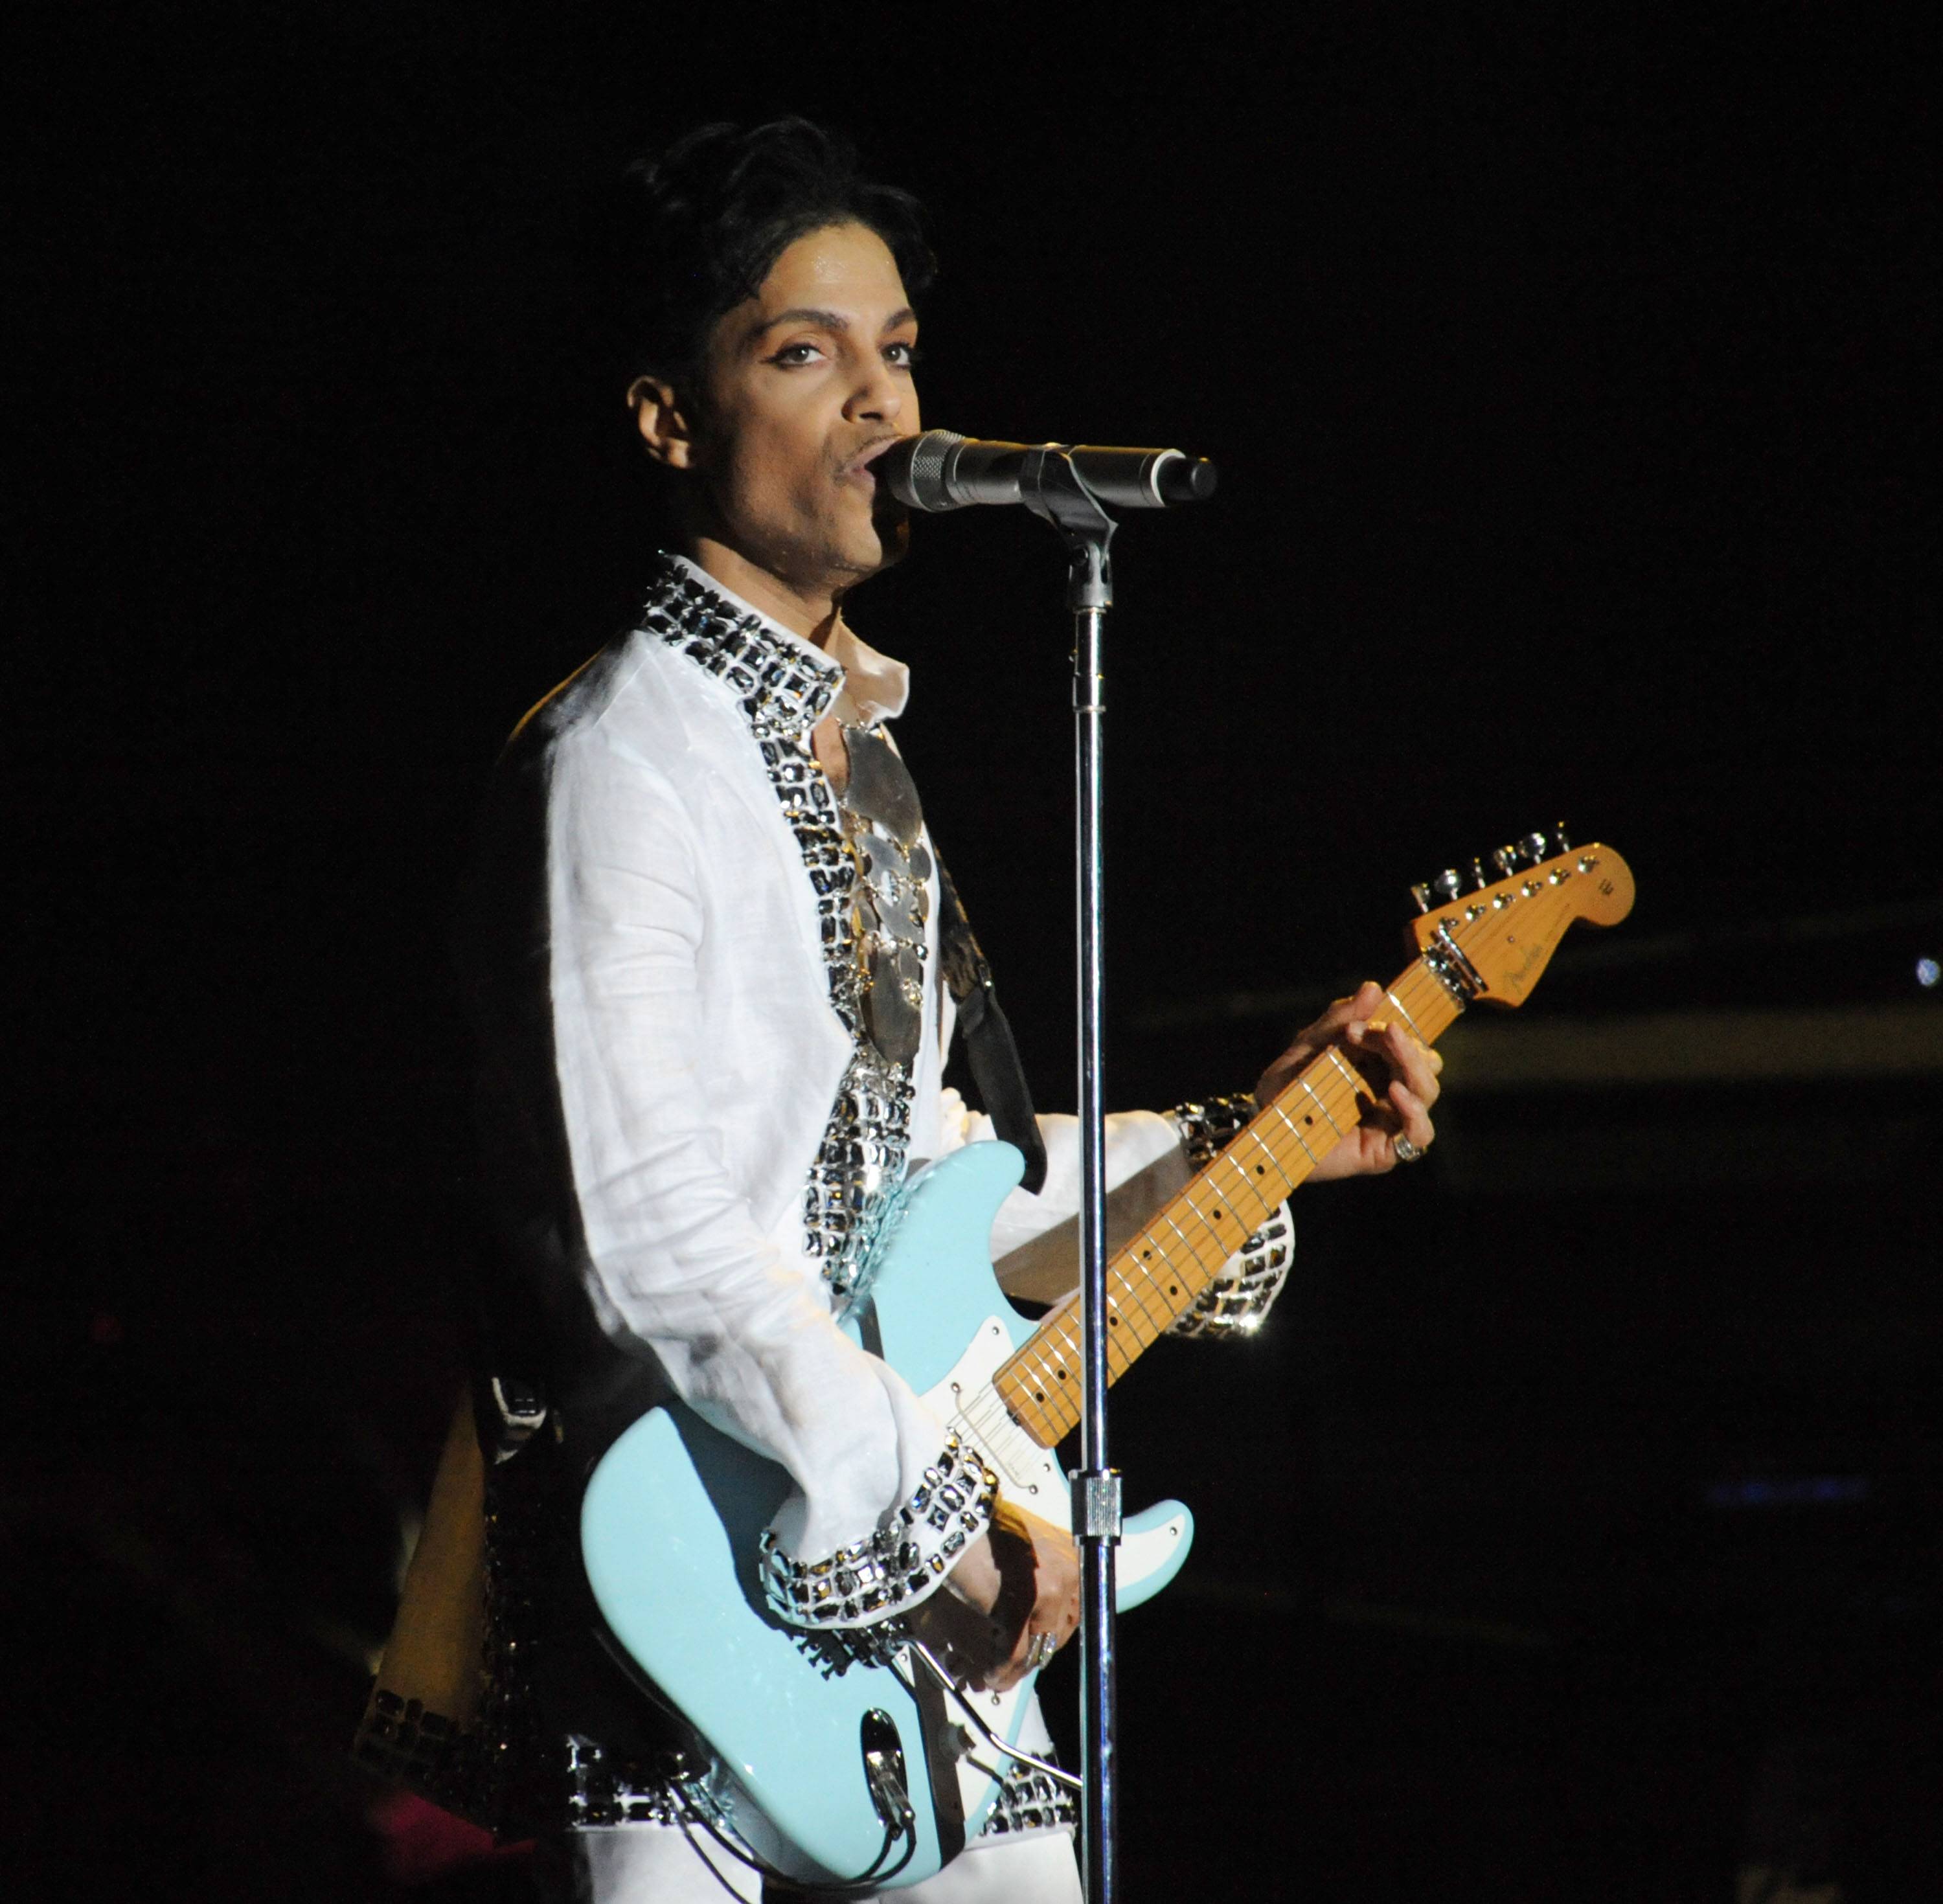 Nel 2016, il musicista Prince è morto senza testamento all'età di 57 anni, lasciando un patrimonio di 300 milioni di dollari. Dopo la morte di Prince, diverse persone hanno rivendicato il patrimonio, tra cui persone che sostenevano di essere i suoi figli e una moglie di cui non si avevano notizie. Queste richieste sono state respinte.